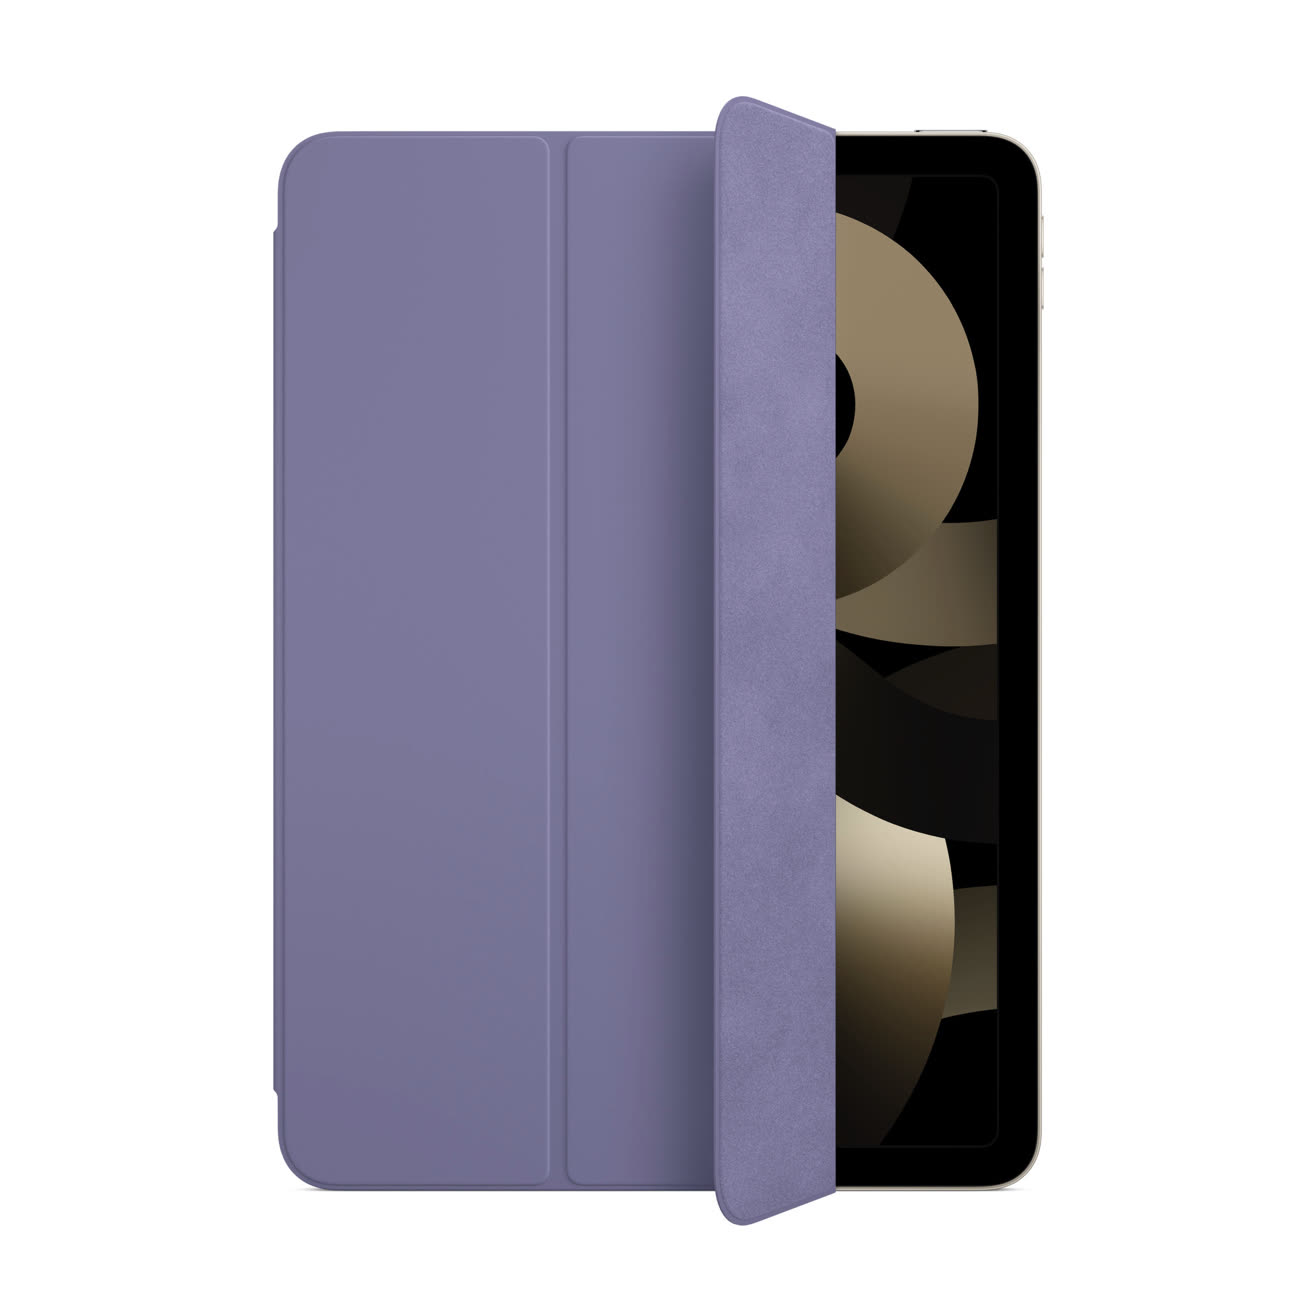 Achetez une Smart Cover pour votre nouvel iPad 10,2 pouces (9ᵉ génération).  - Apple (FR)